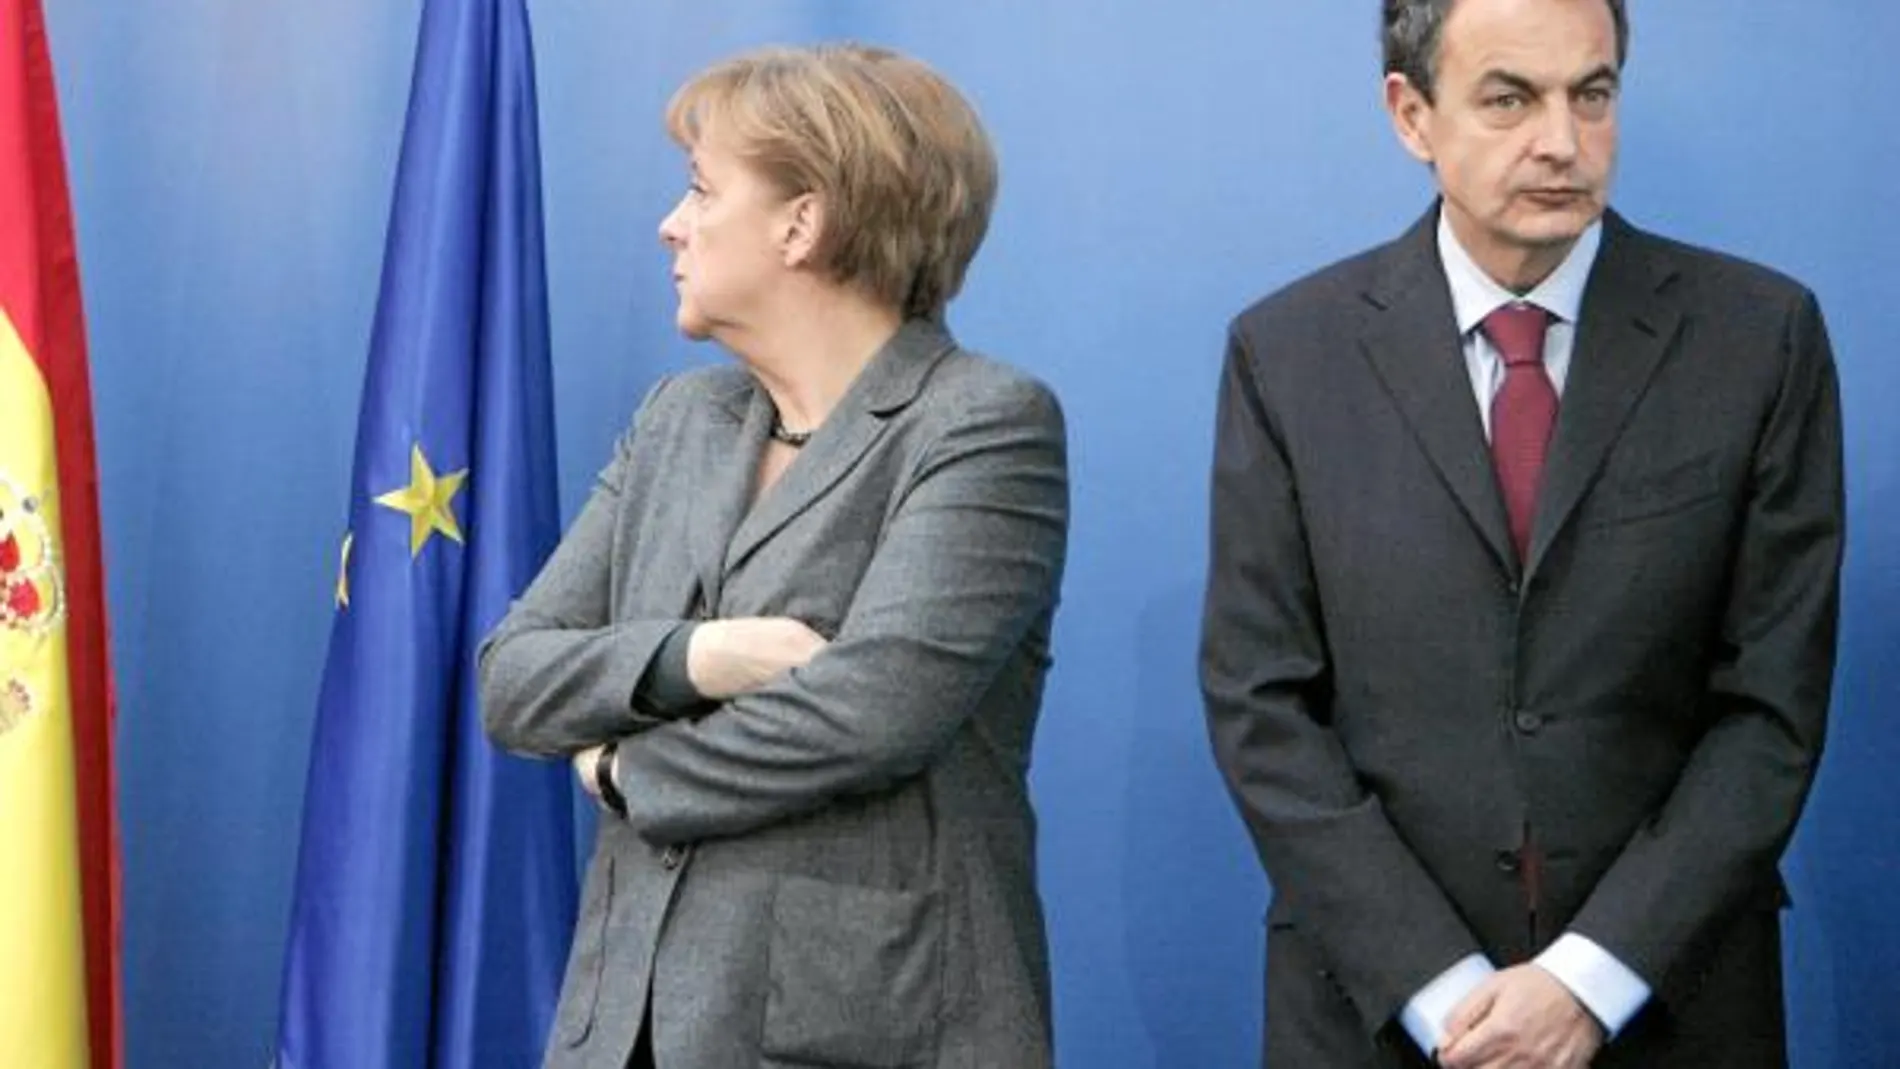 Hasta ahora, las citas en las que han coincidido Merkel y Zapatero, han puesto en evidencia su gran distanciamiento